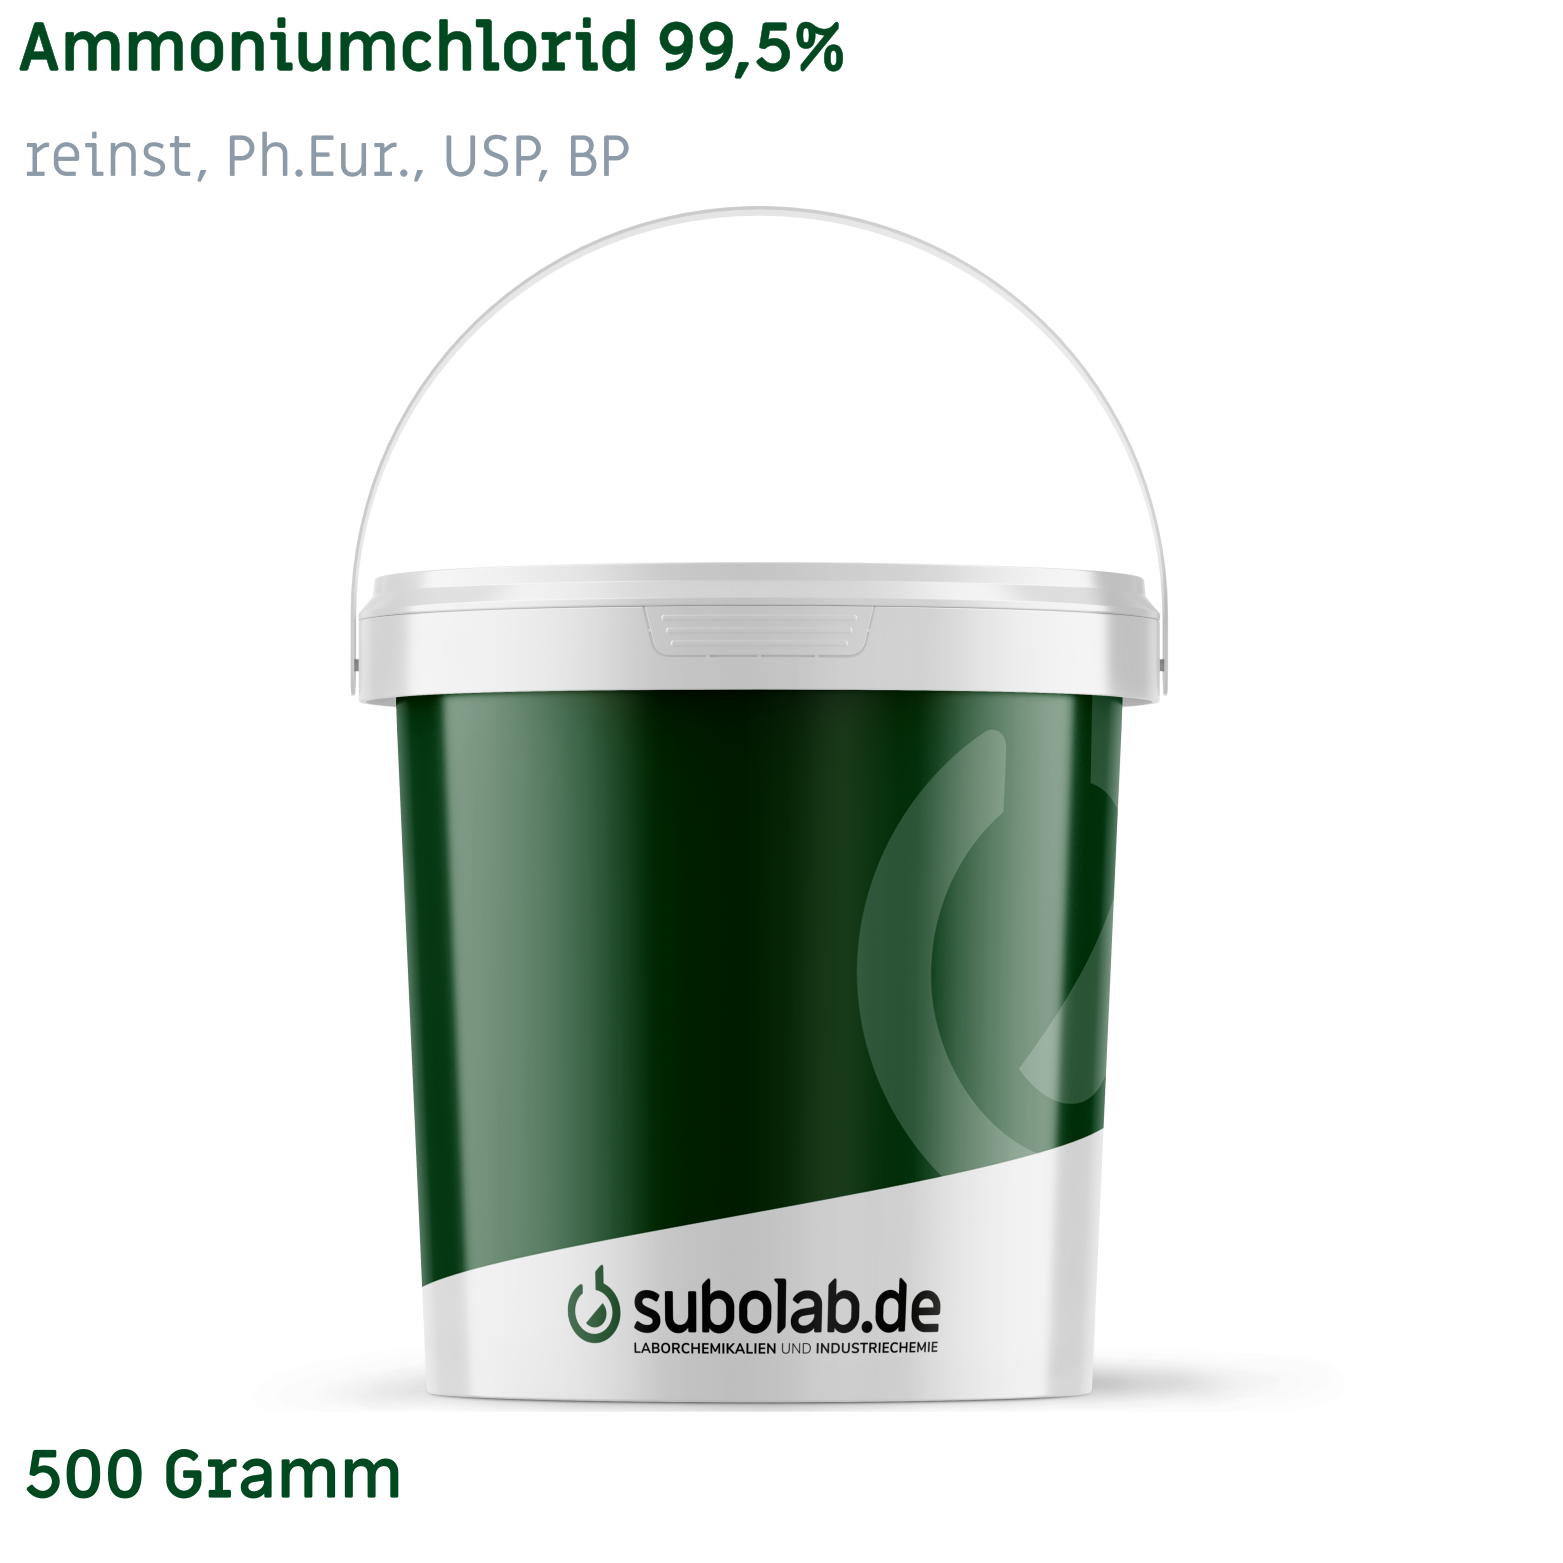 Bild von Ammoniumchlorid 99,5% reinst, Ph.Eur., USP, BP (500 Gramm)